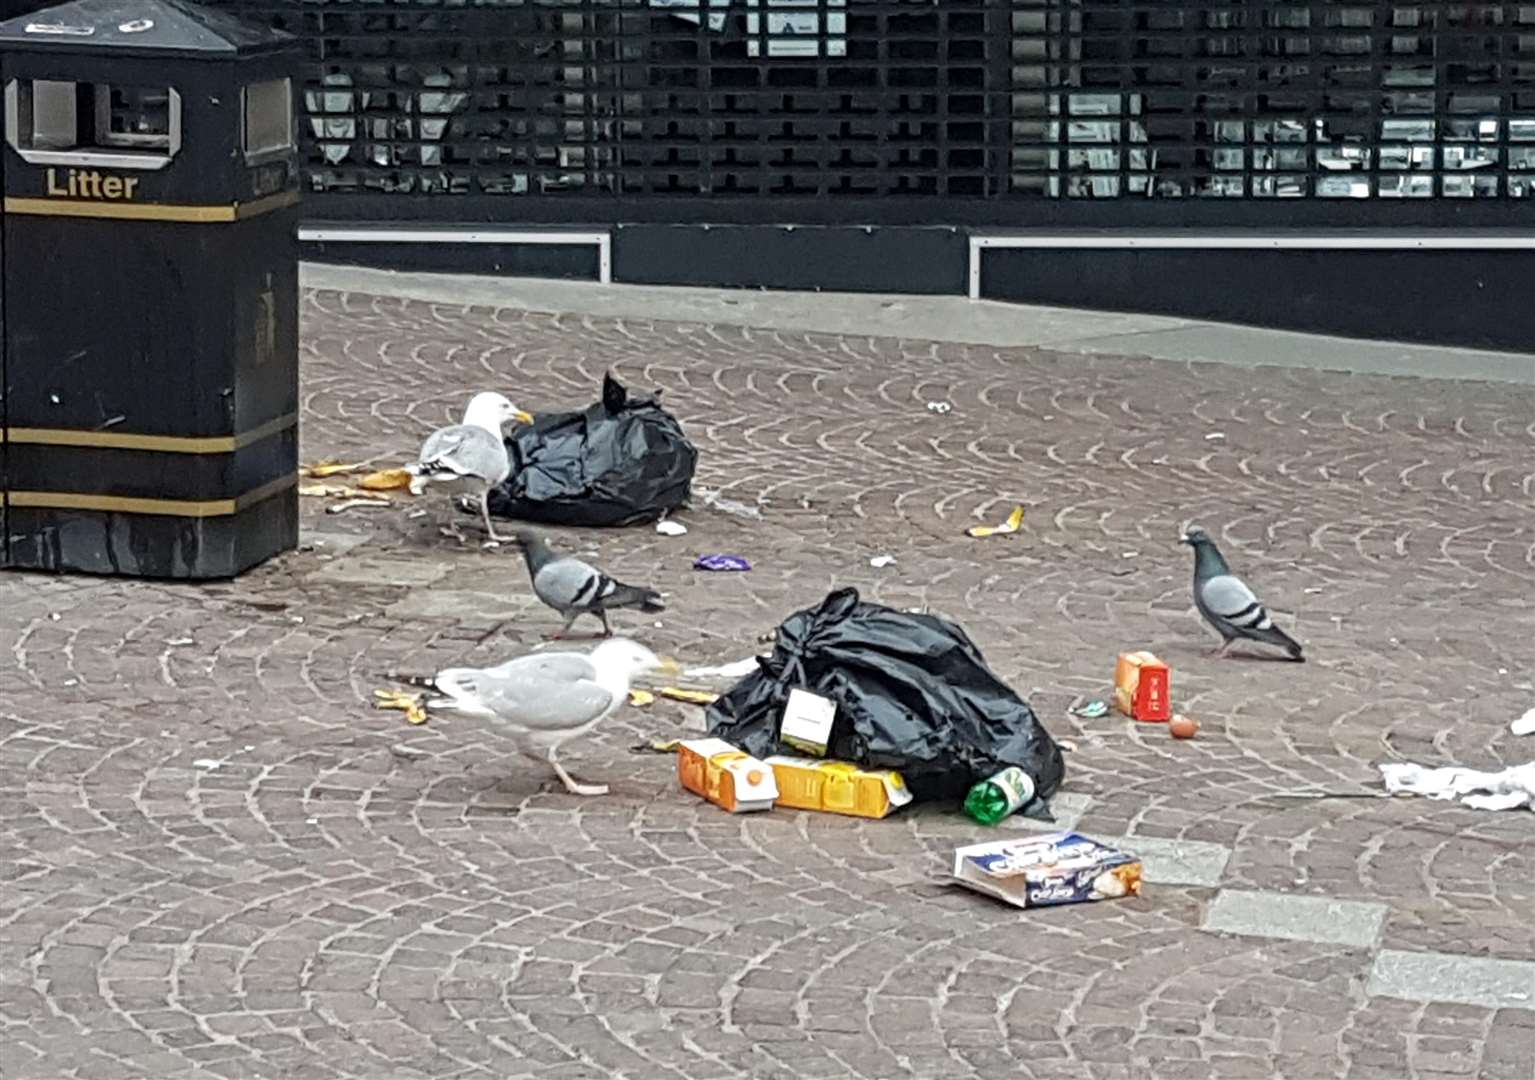 Seagulls feast on people's leftovers